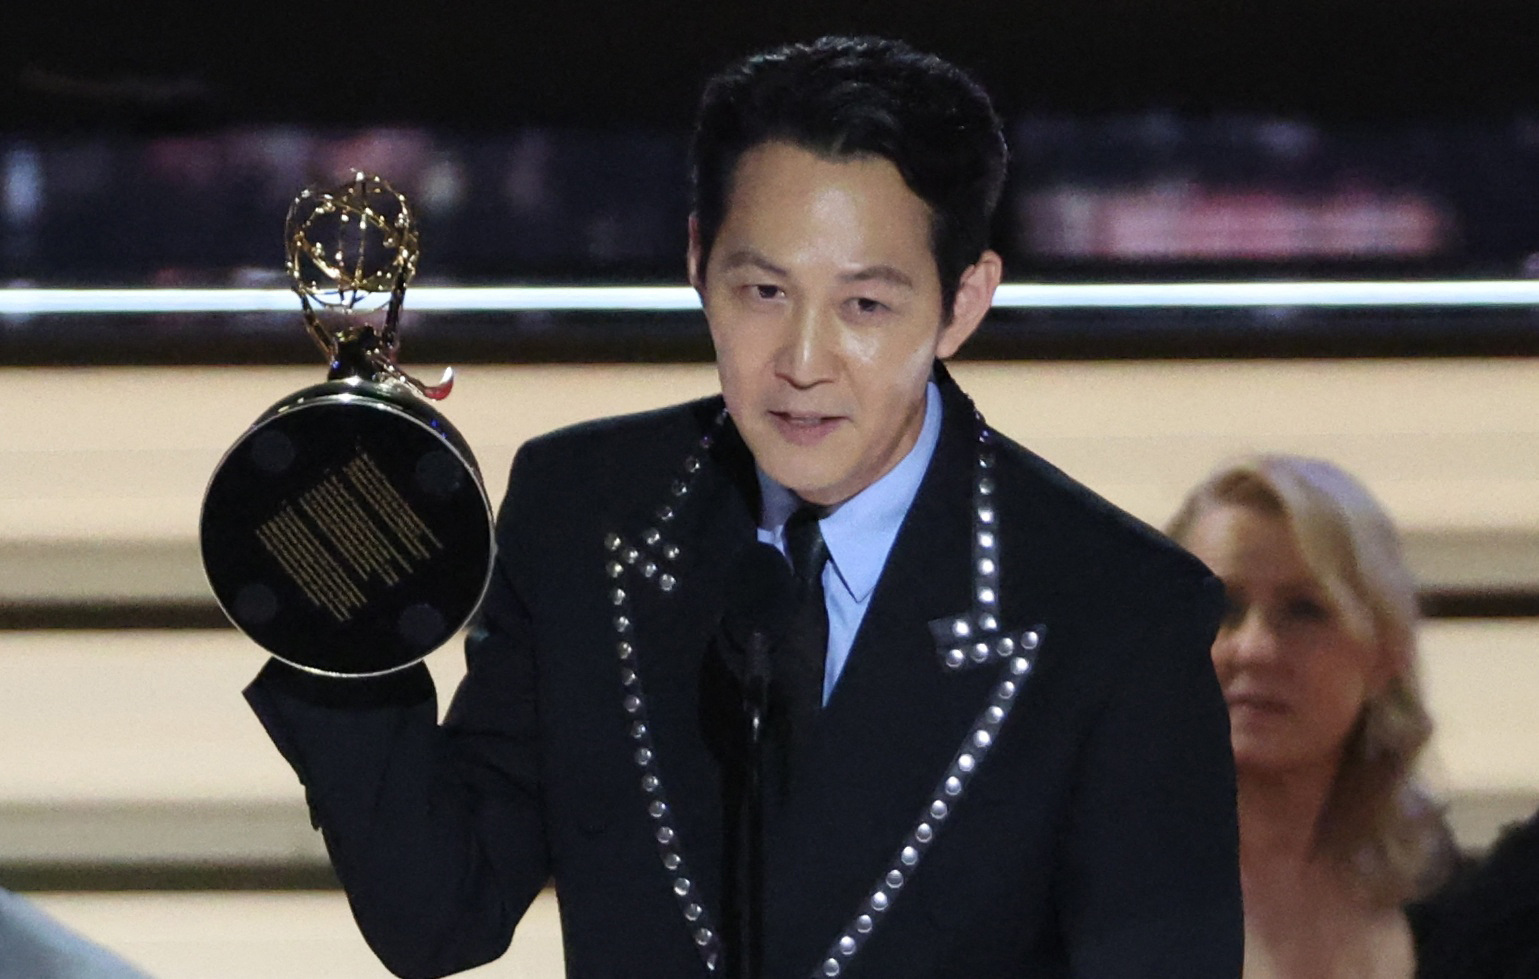 Lee Jung-jae acepta el premio al actor principal destacado en una serie dramática por "Squid Game" (Reuters)